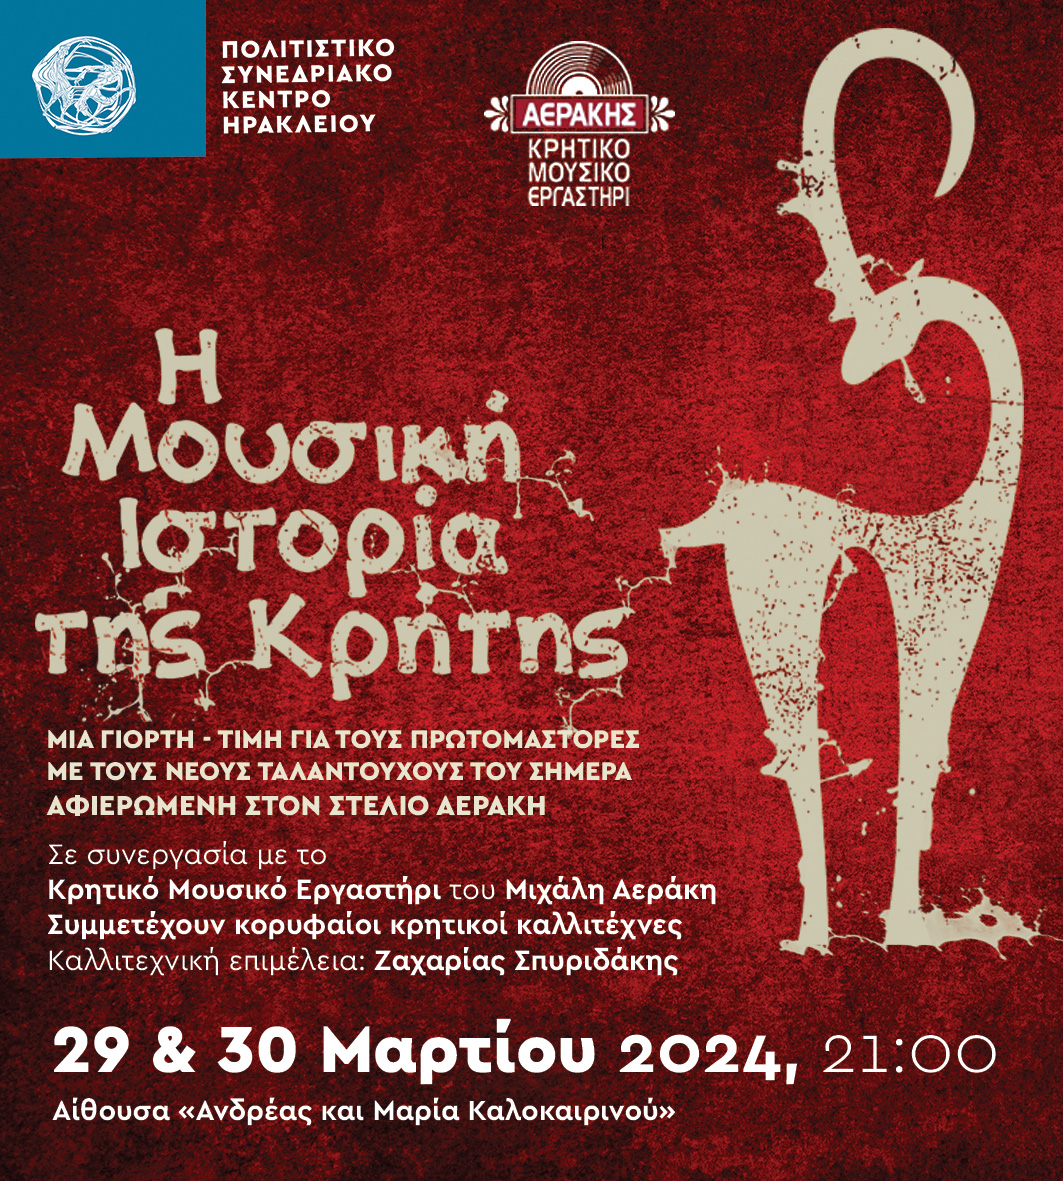 Η μουσική ιστορία της Κρήτης στο Πολιτιστικό Συνεδριακό Κέντρο Ηρακλείου